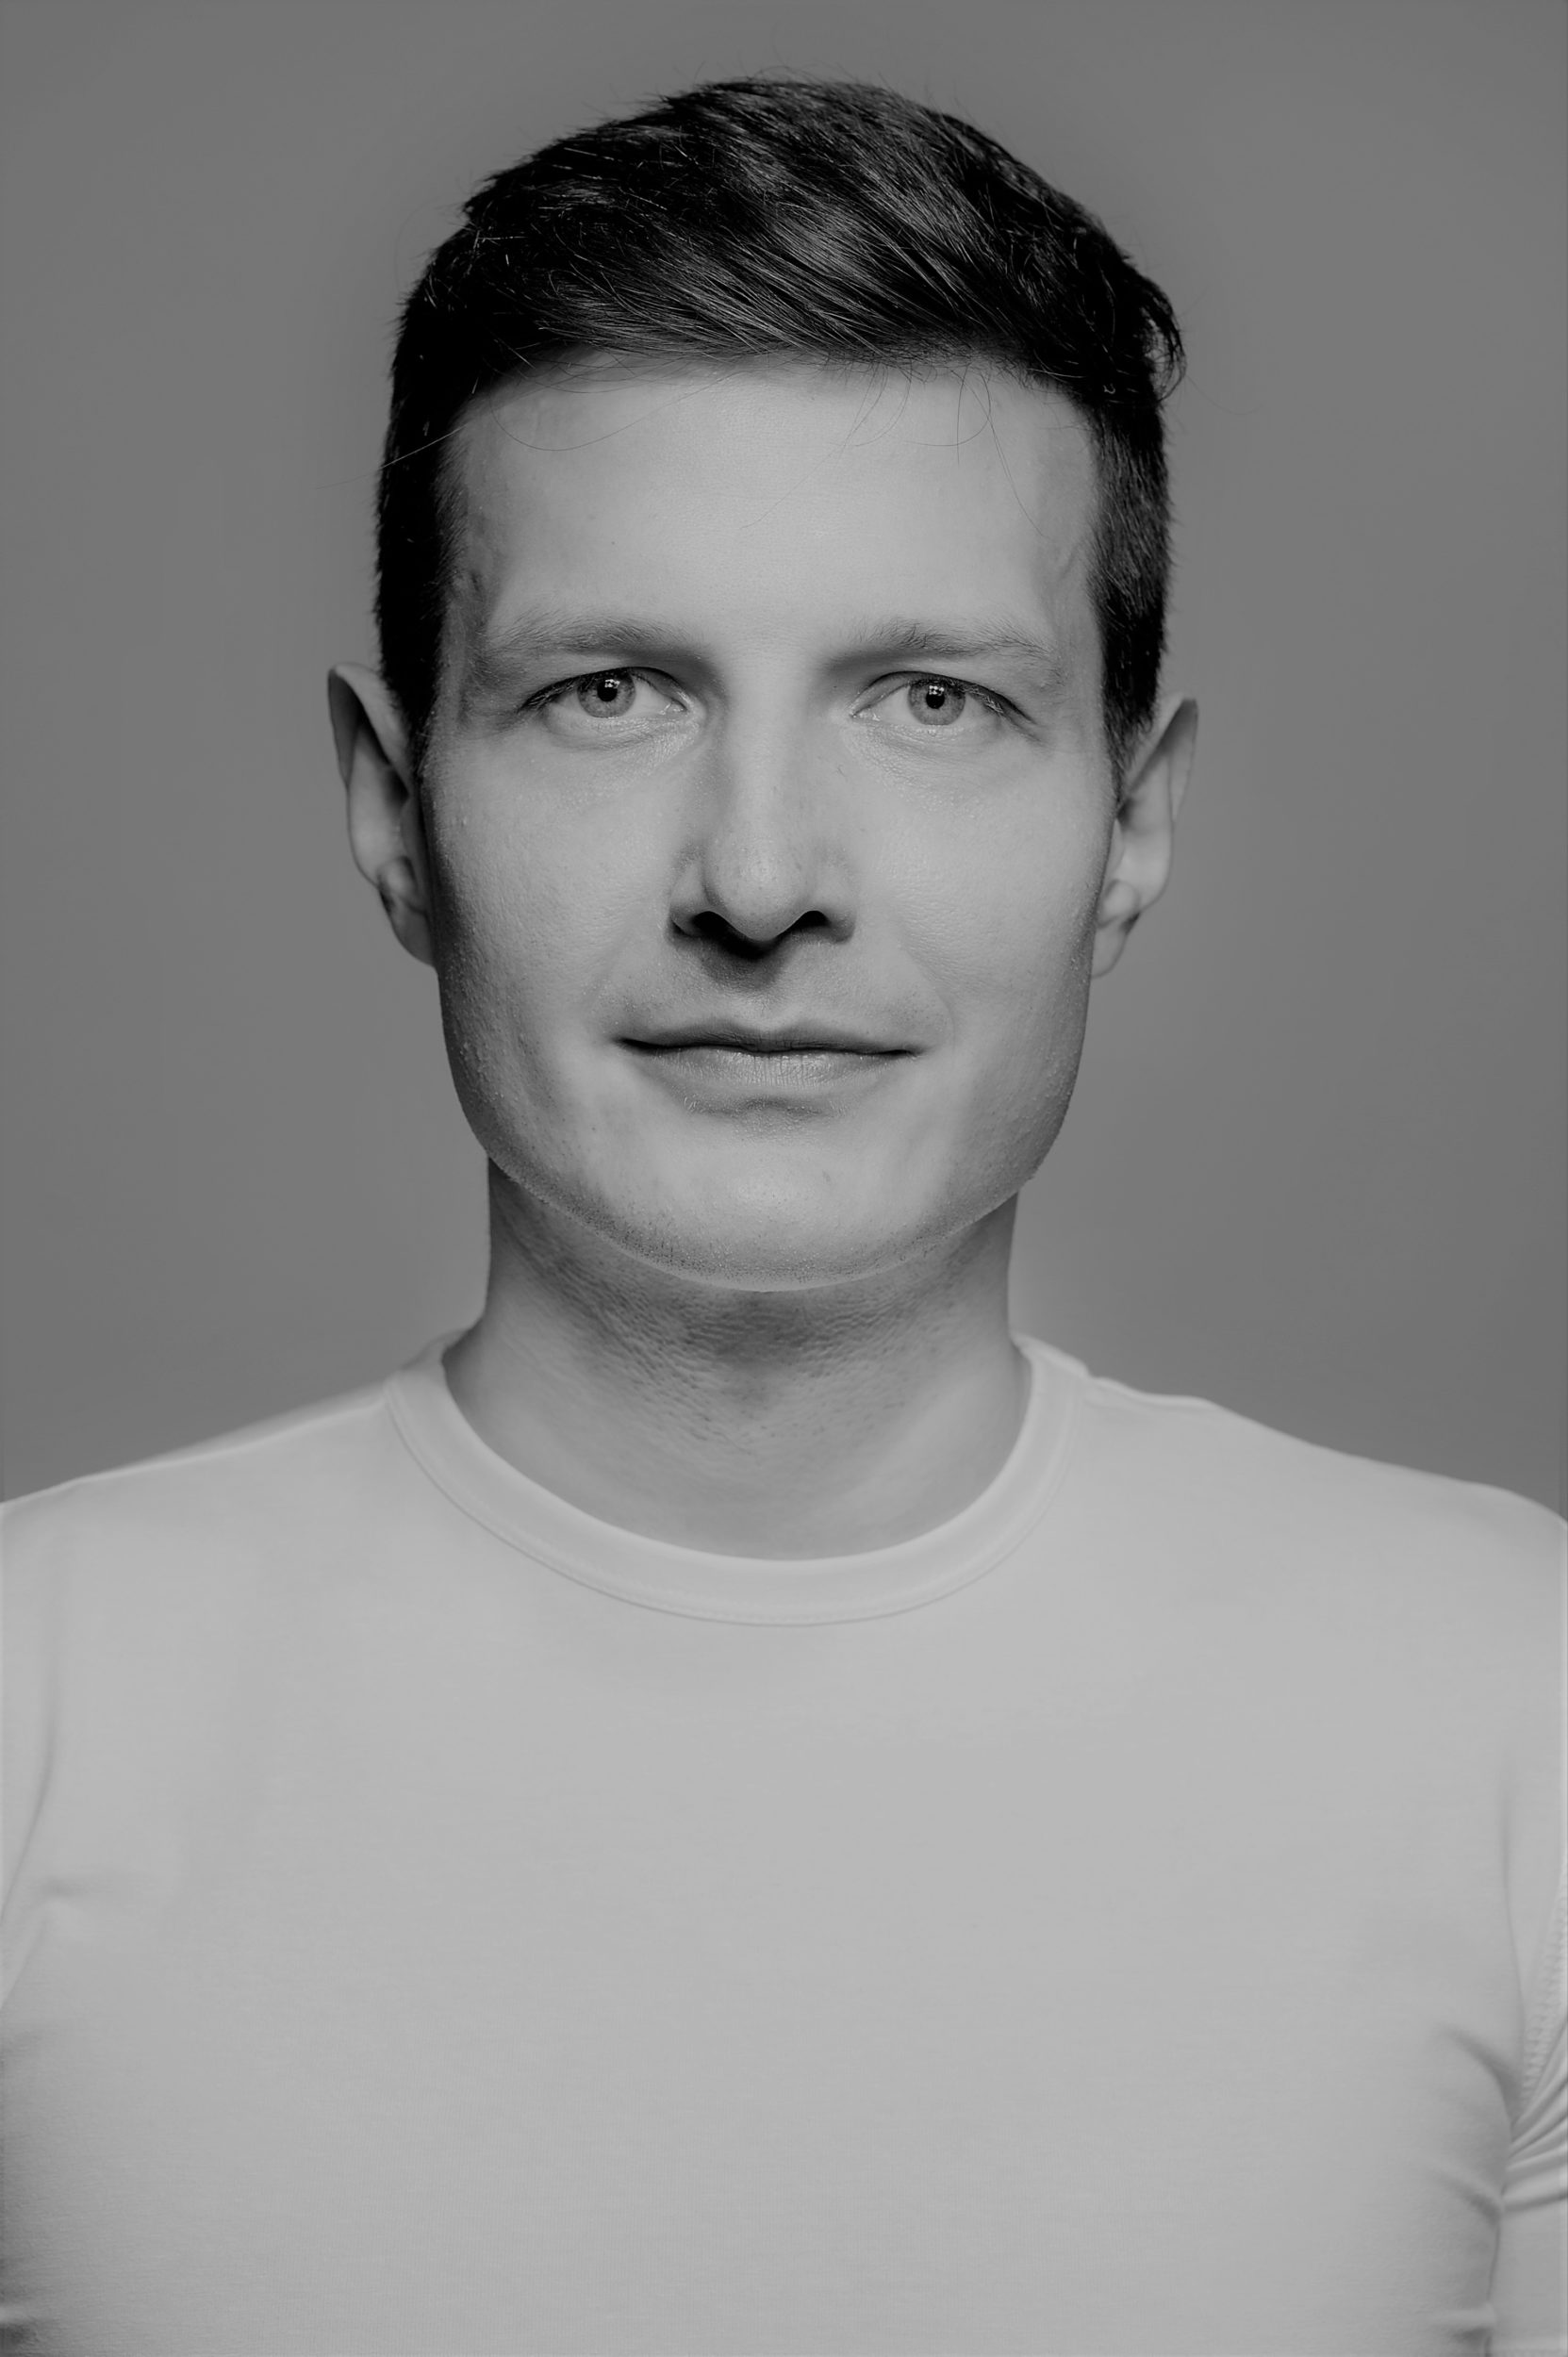 Cezary Jabłoński aktor. Portret mężczyzny, krótkie ciemne włosy, delikatny uśmiech, ubrany w jasny podkoszulek.